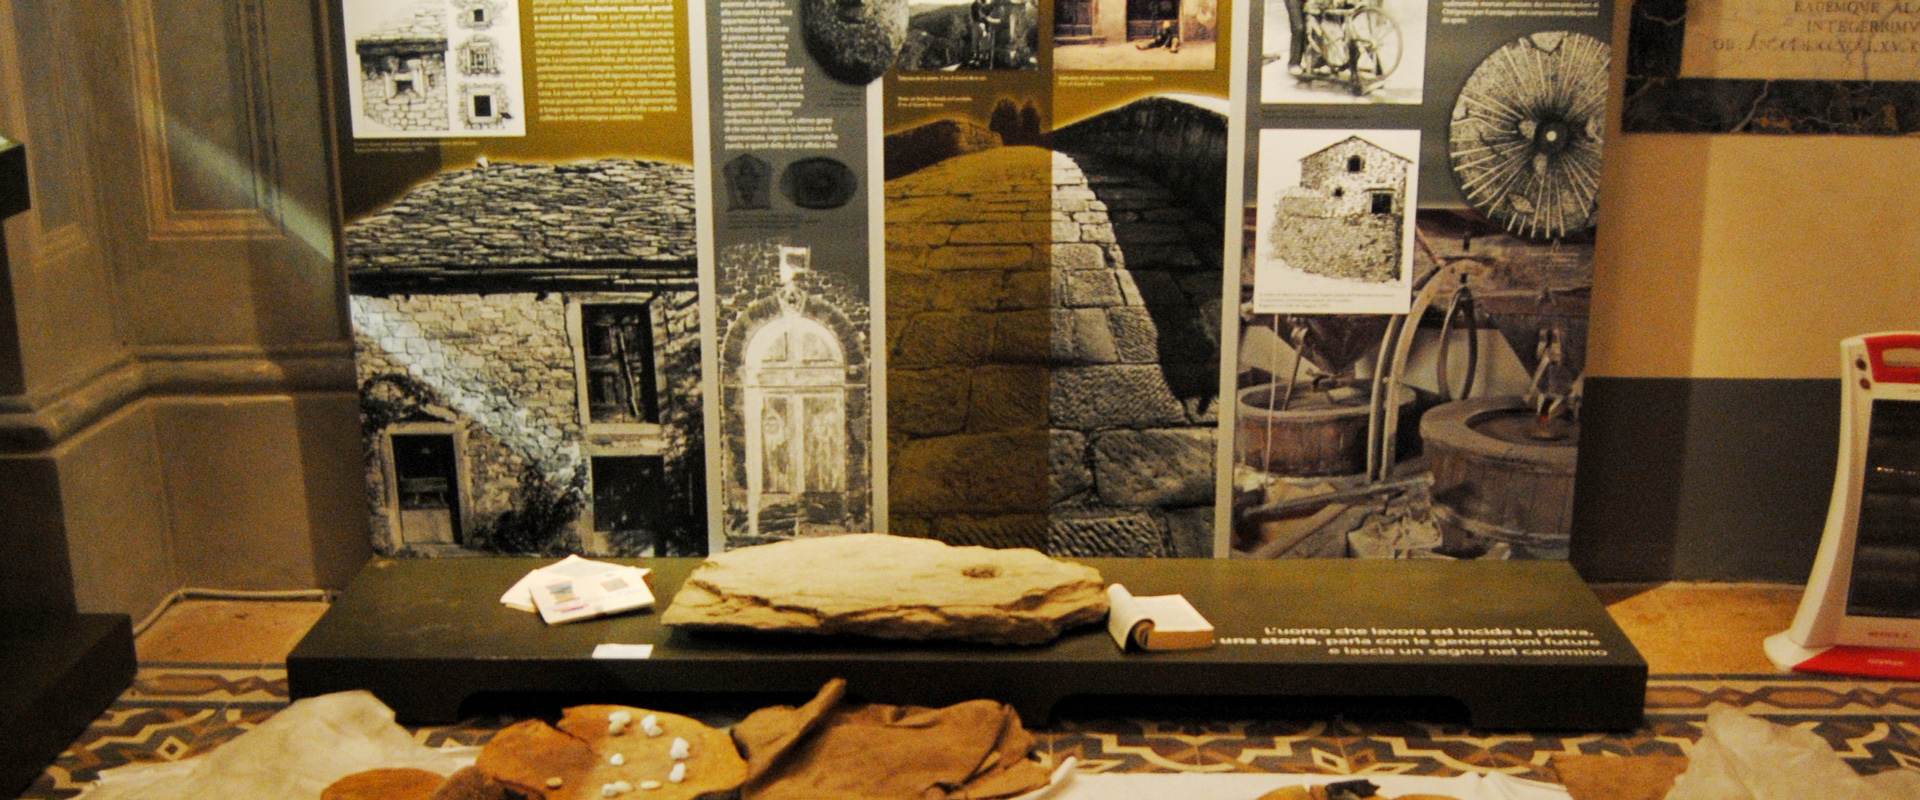 Casentino: la mission dell’Ecomuseo è salvare il patrimonio culturale del territorio